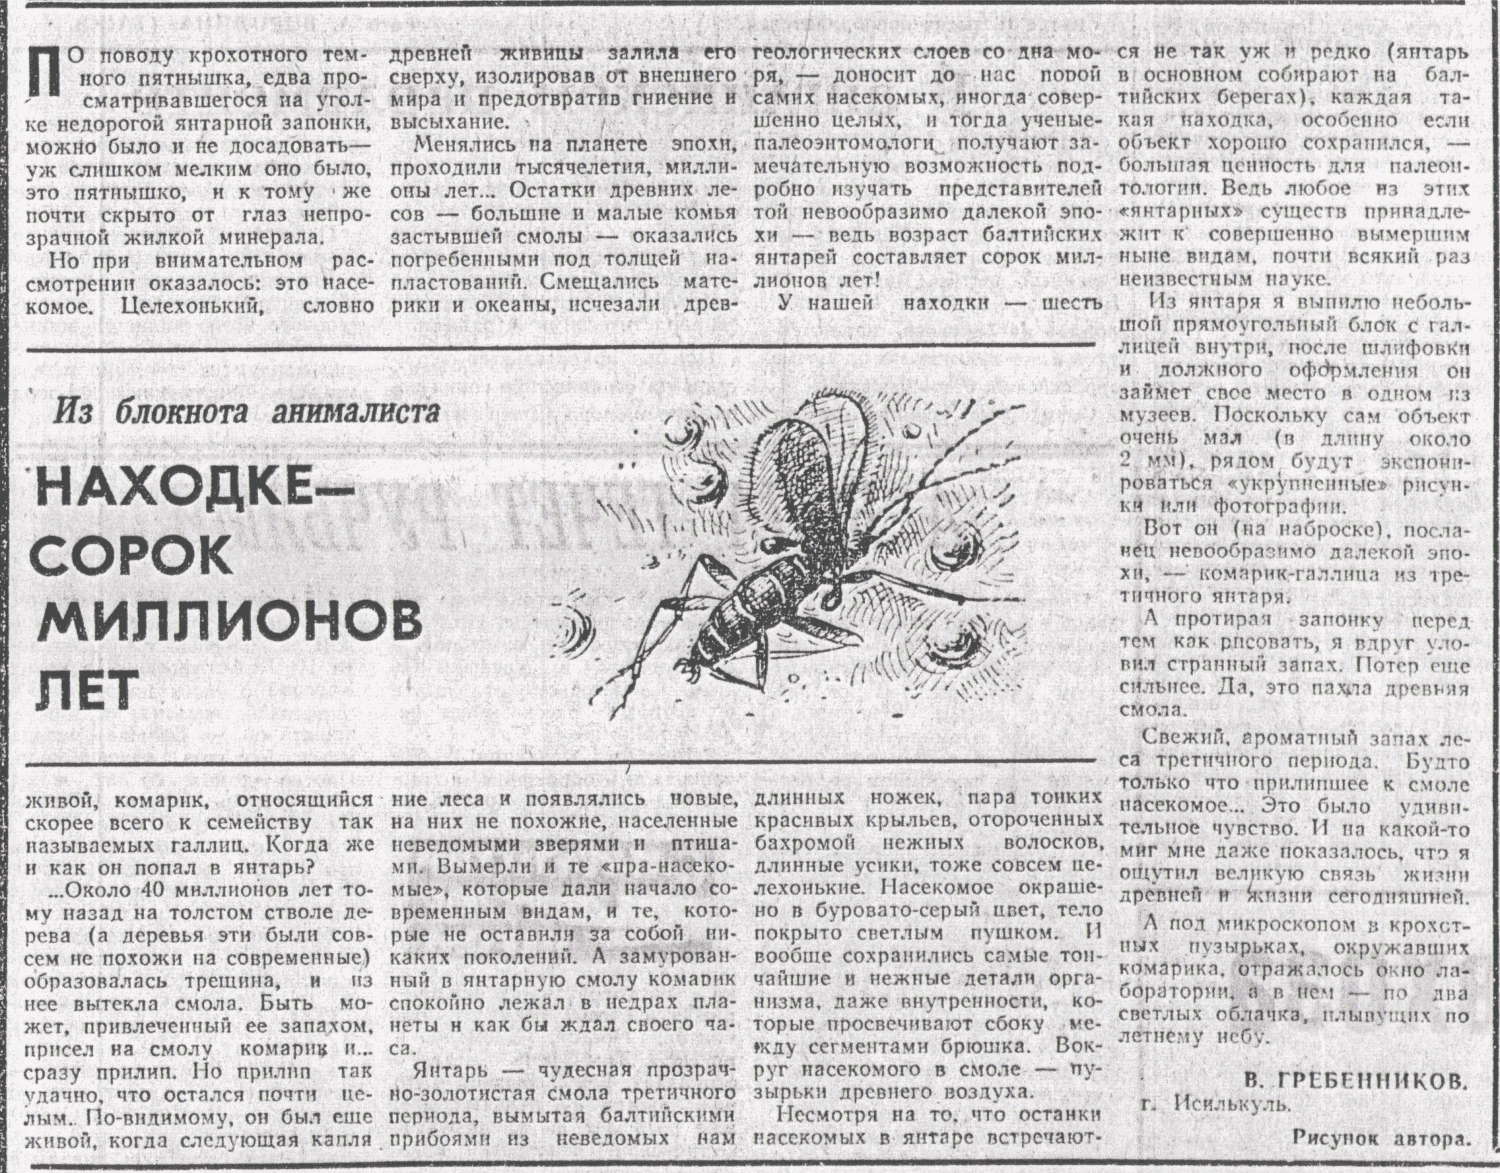 Находке — сорок миллионов лет. В.С. Гребенников. Омская правда, 12.07.1975. Фотокопия